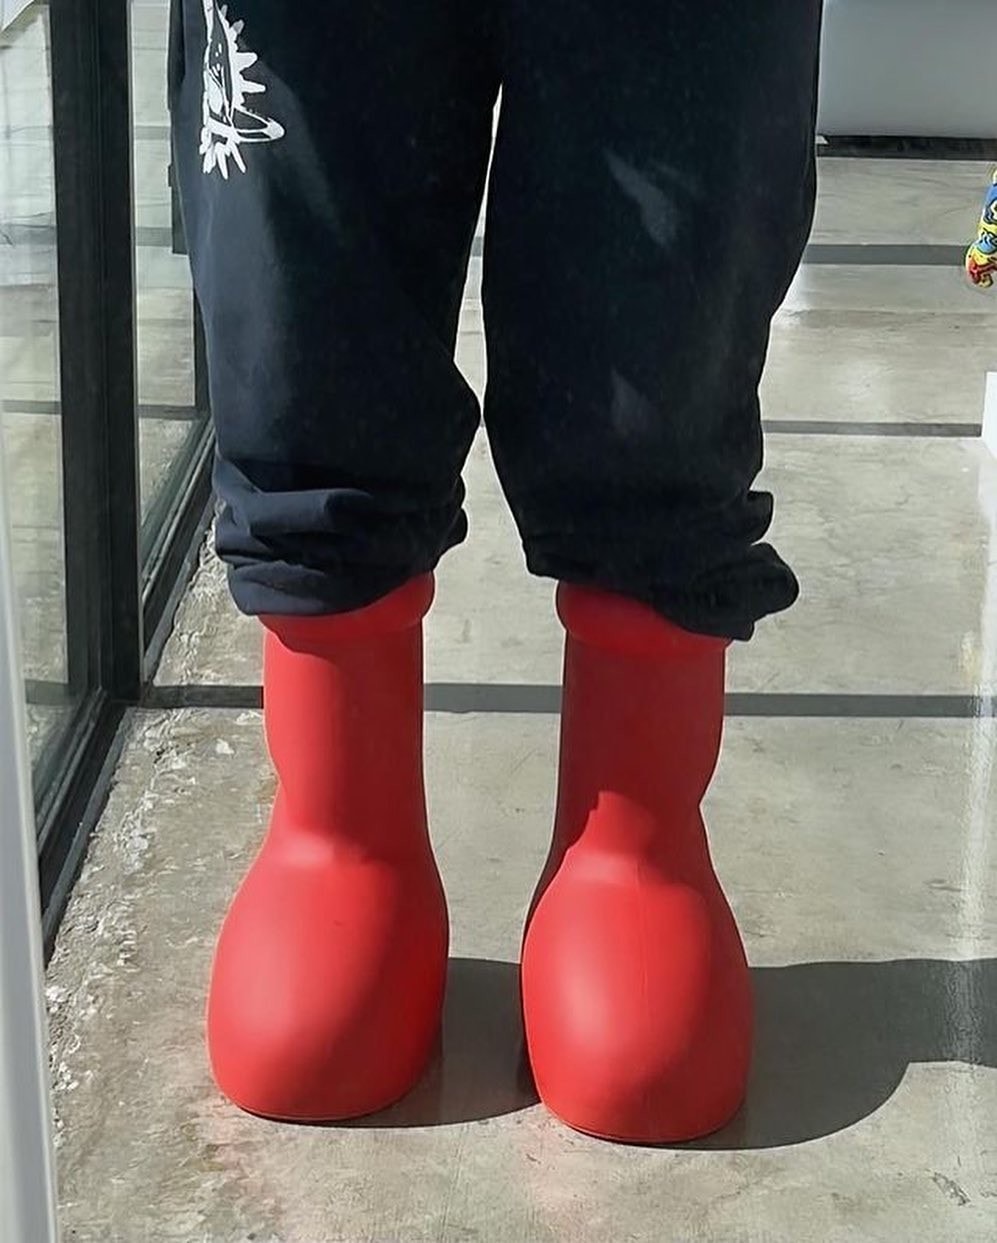 創意團體 MSCHF 打造最新「Astro Boy」造型紅色鞋款率先曝光